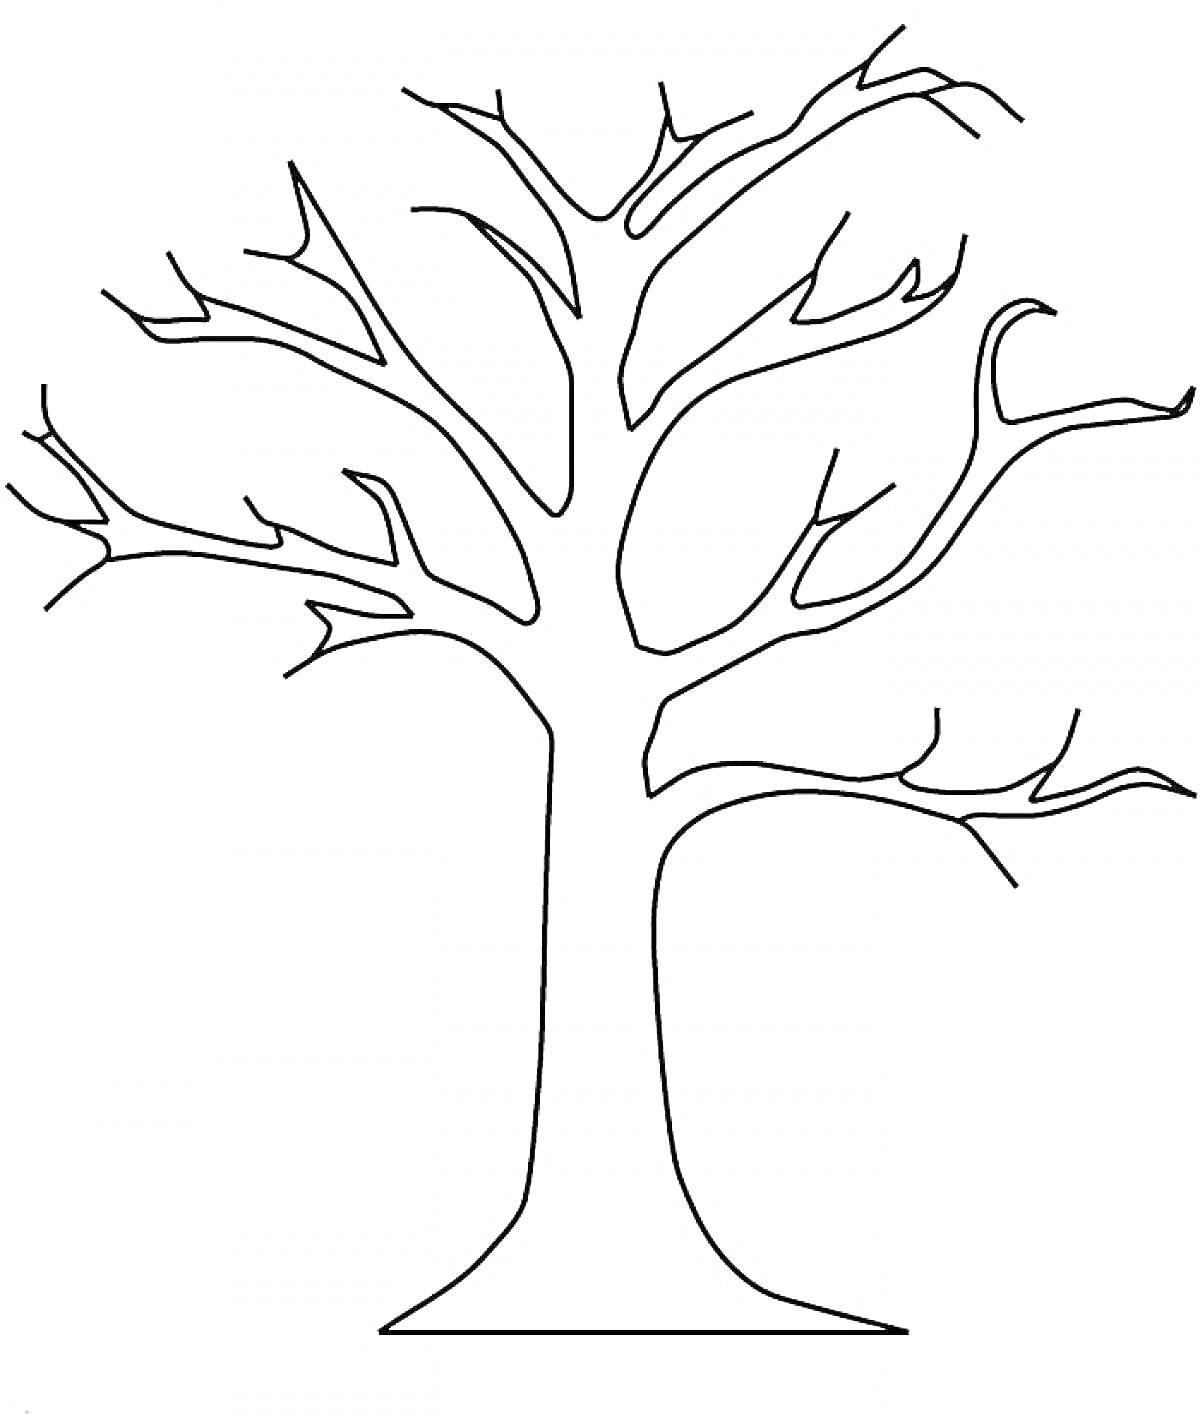 РаскраскаДерево без листьев, контурное изображение